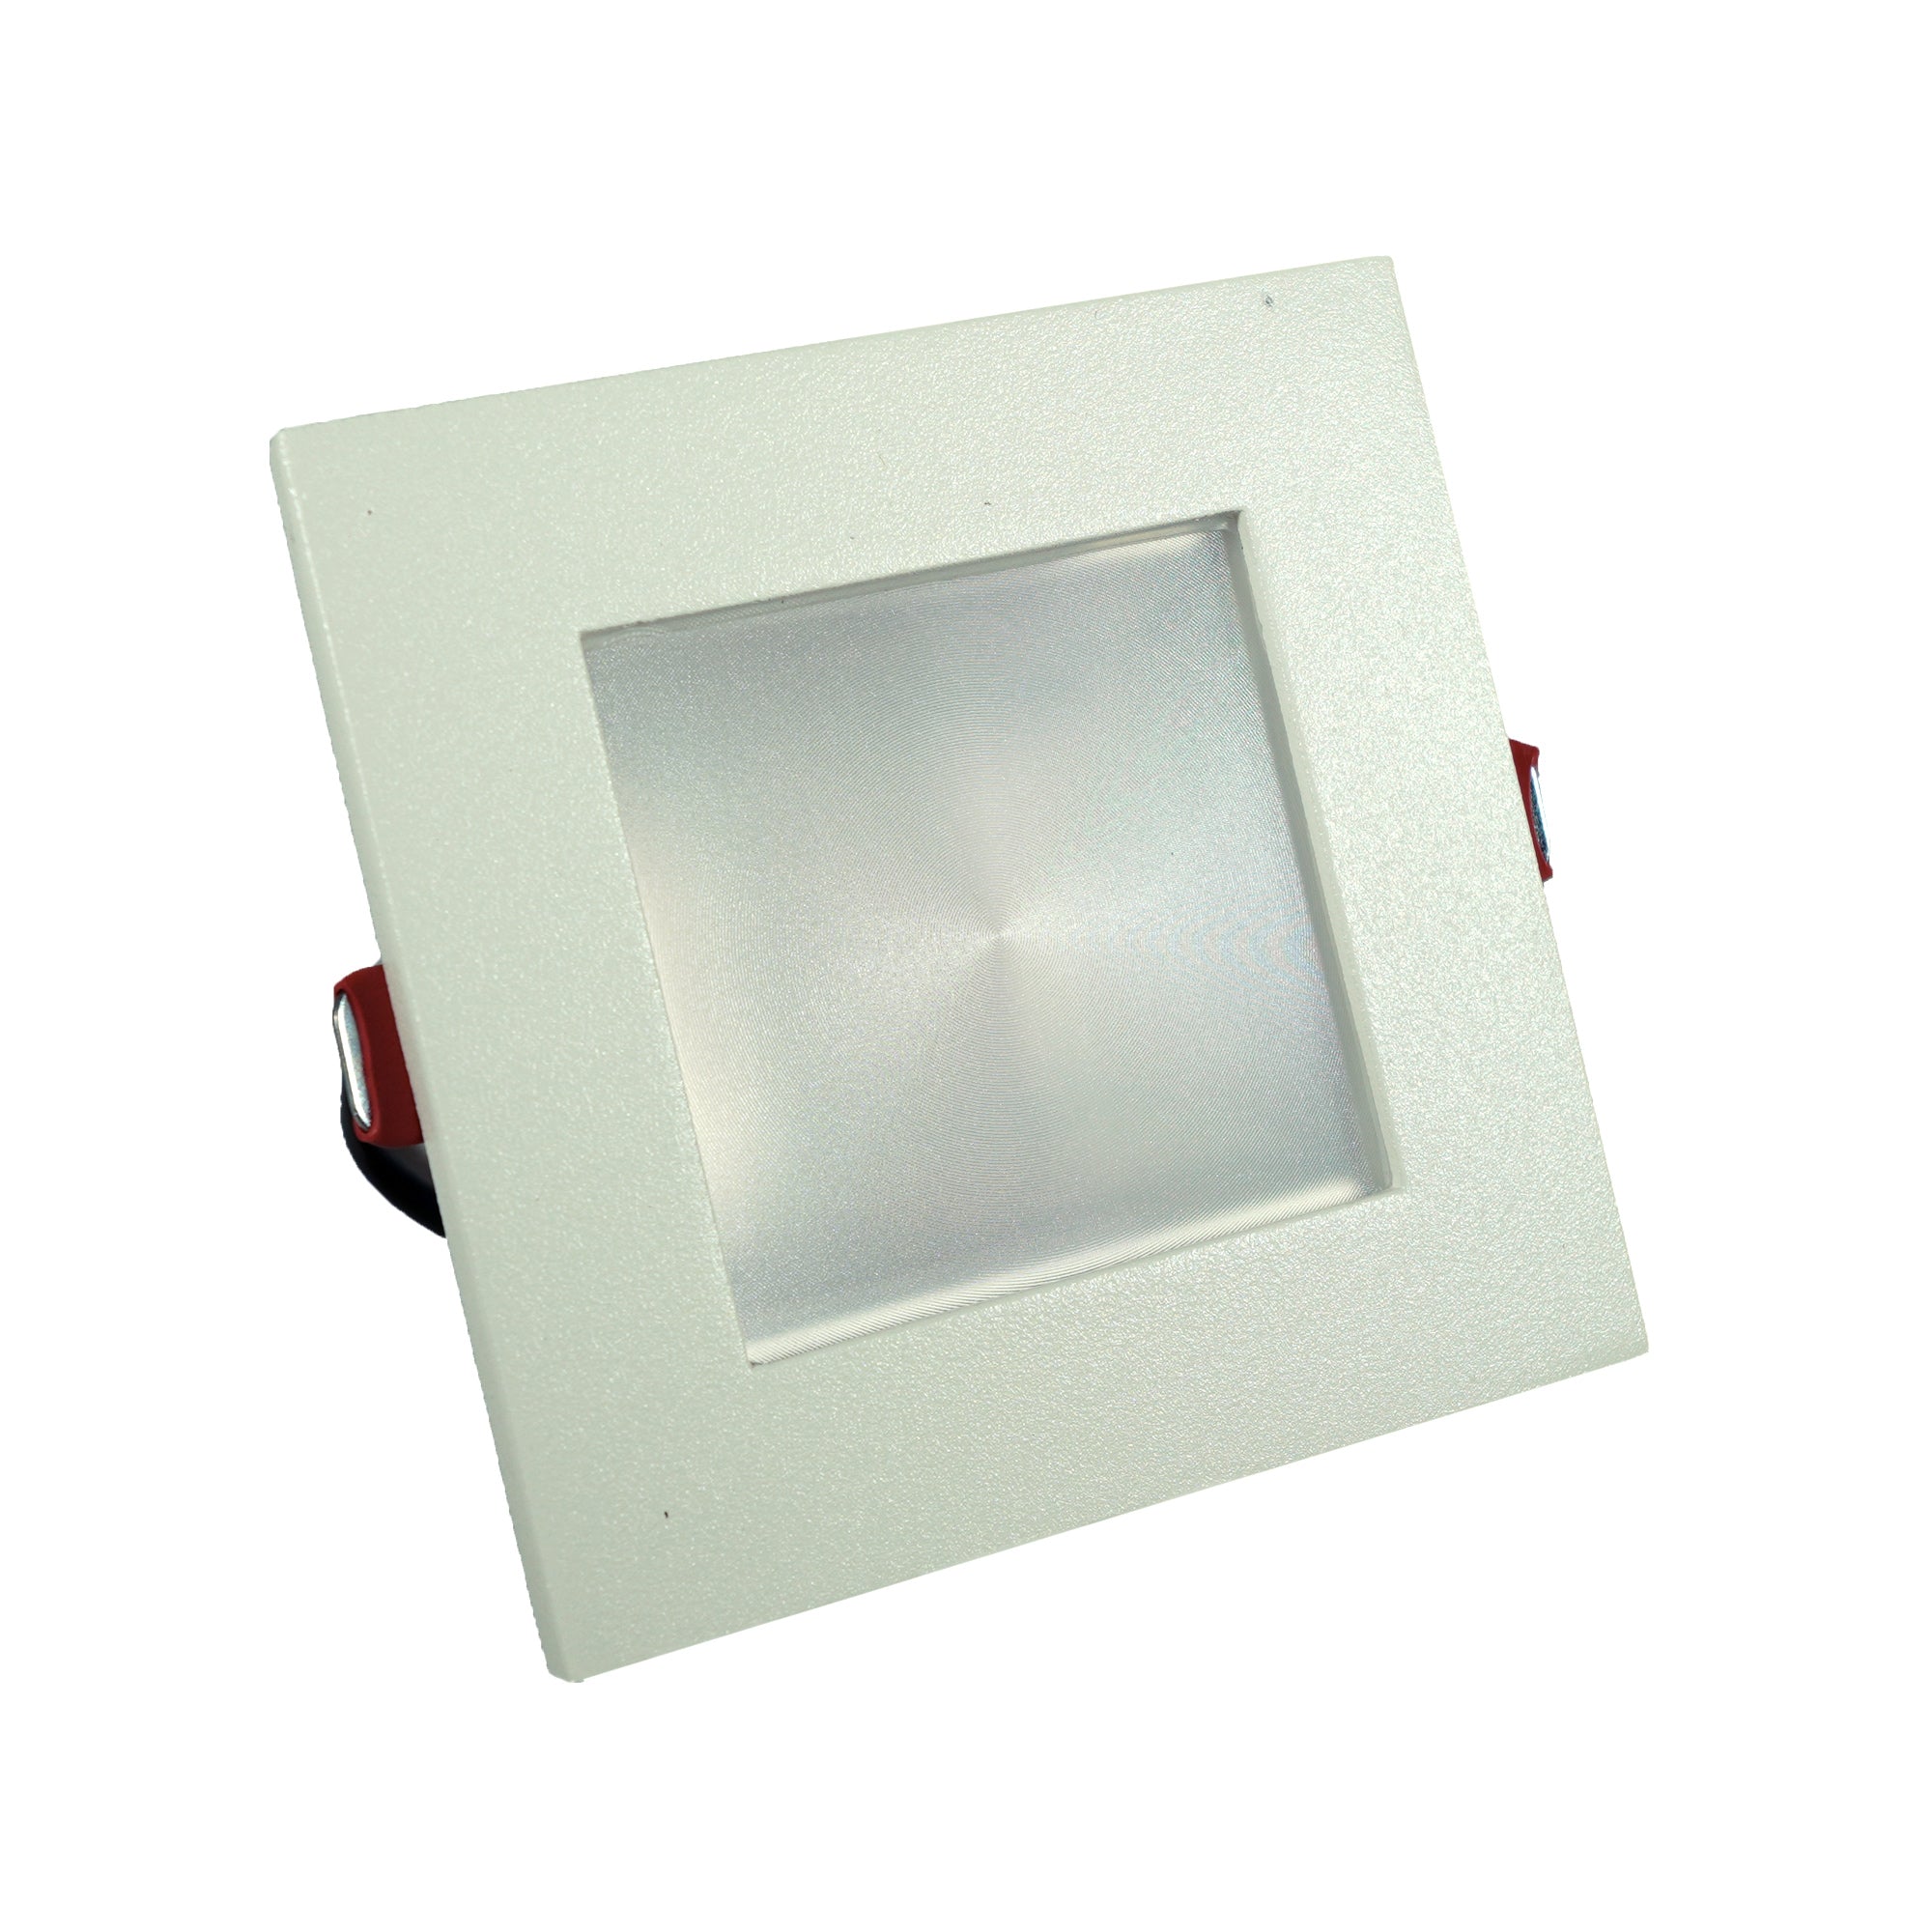 Luminario downlight LED cuadrado para empotrar en techo TL-4443.B27